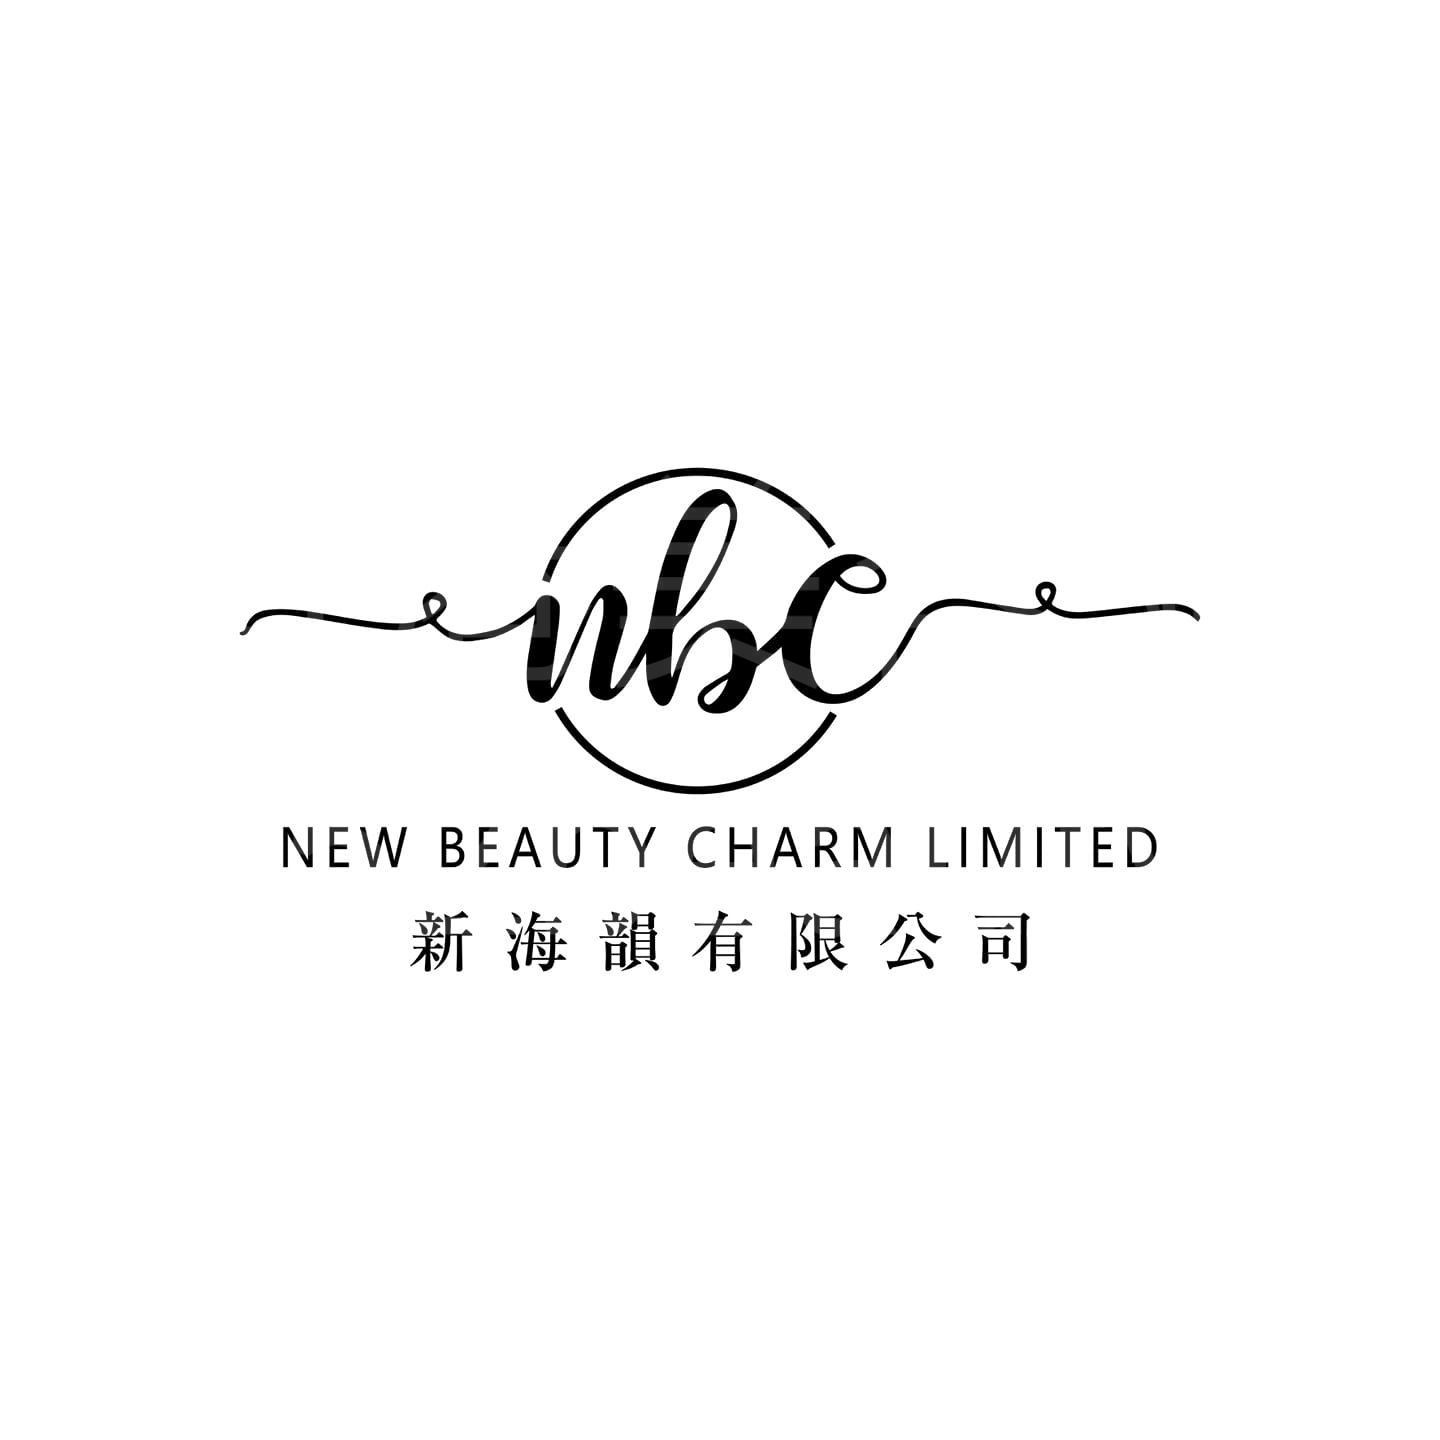 脫毛: New Beauty Charm 新海韻